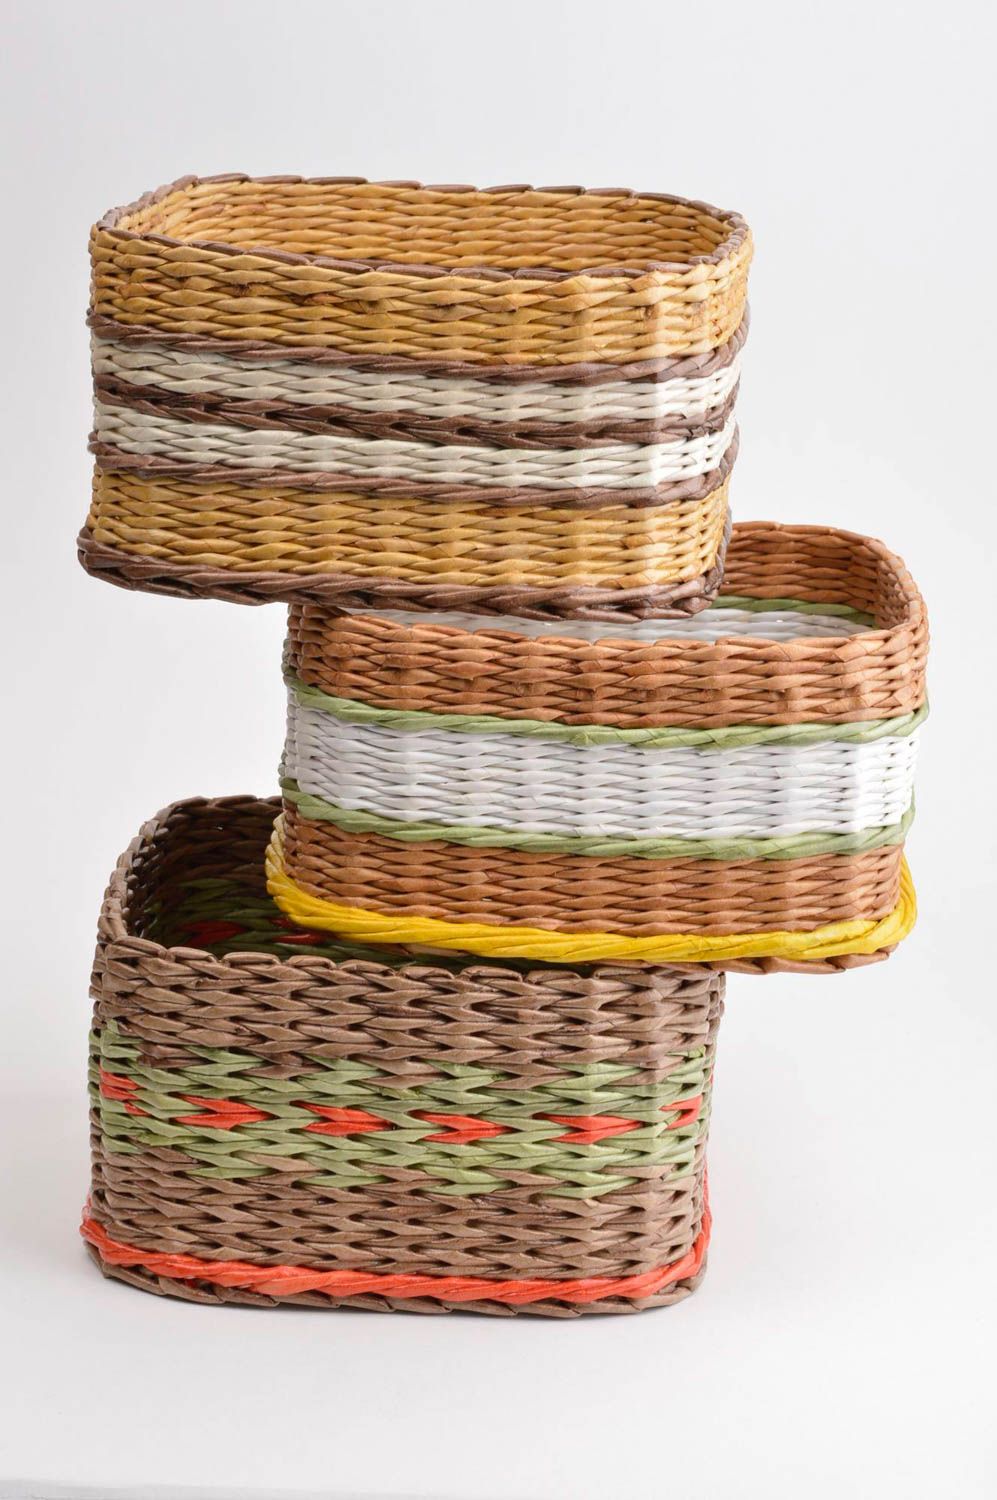 Плетеные корзины ручной работы 3 штуки подарочные корзины предметы интерьера фото 2